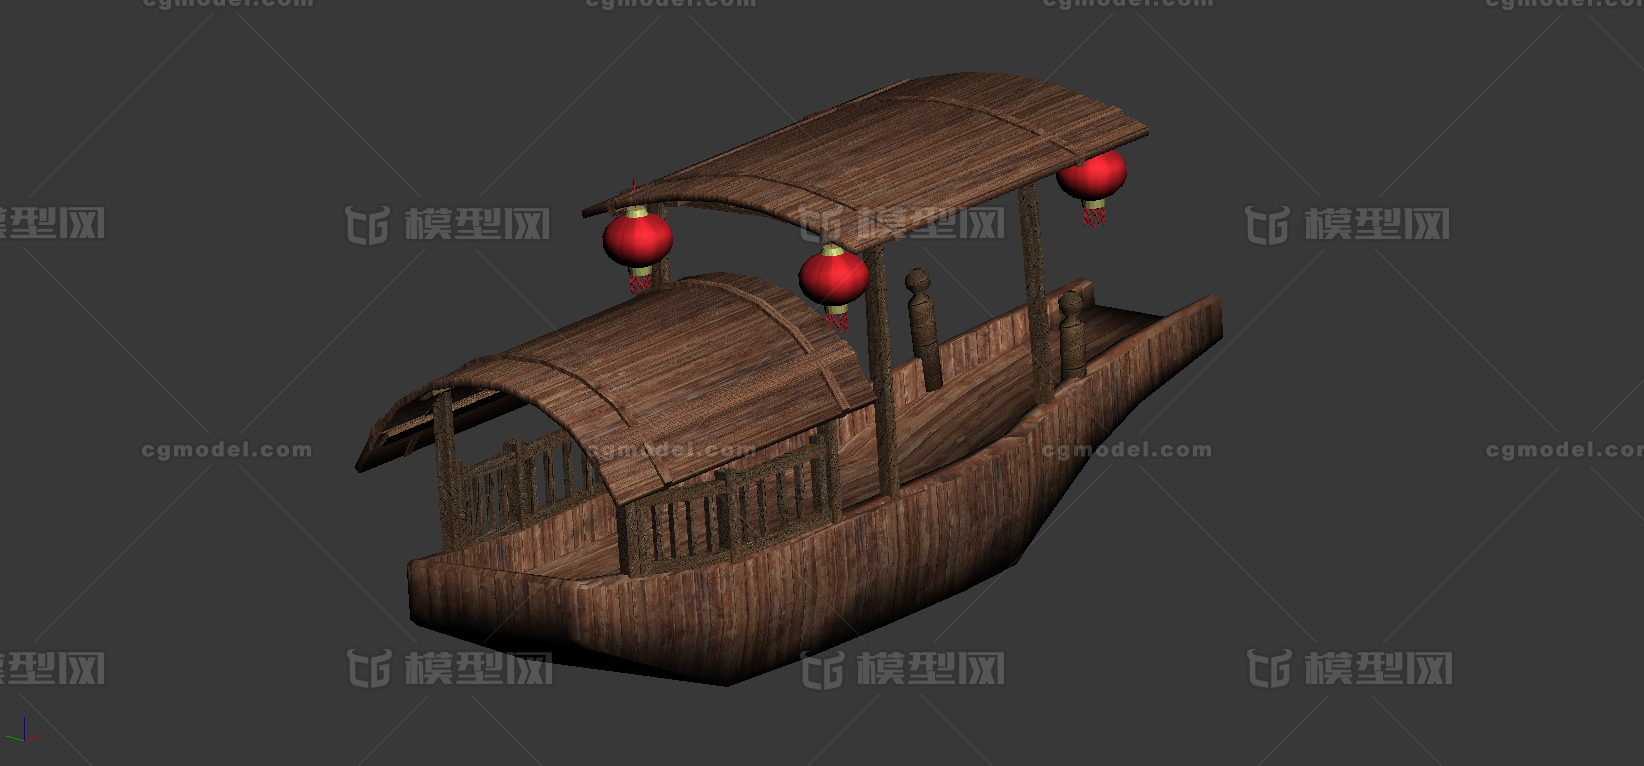 古代船小船渡船乌篷船划桨船